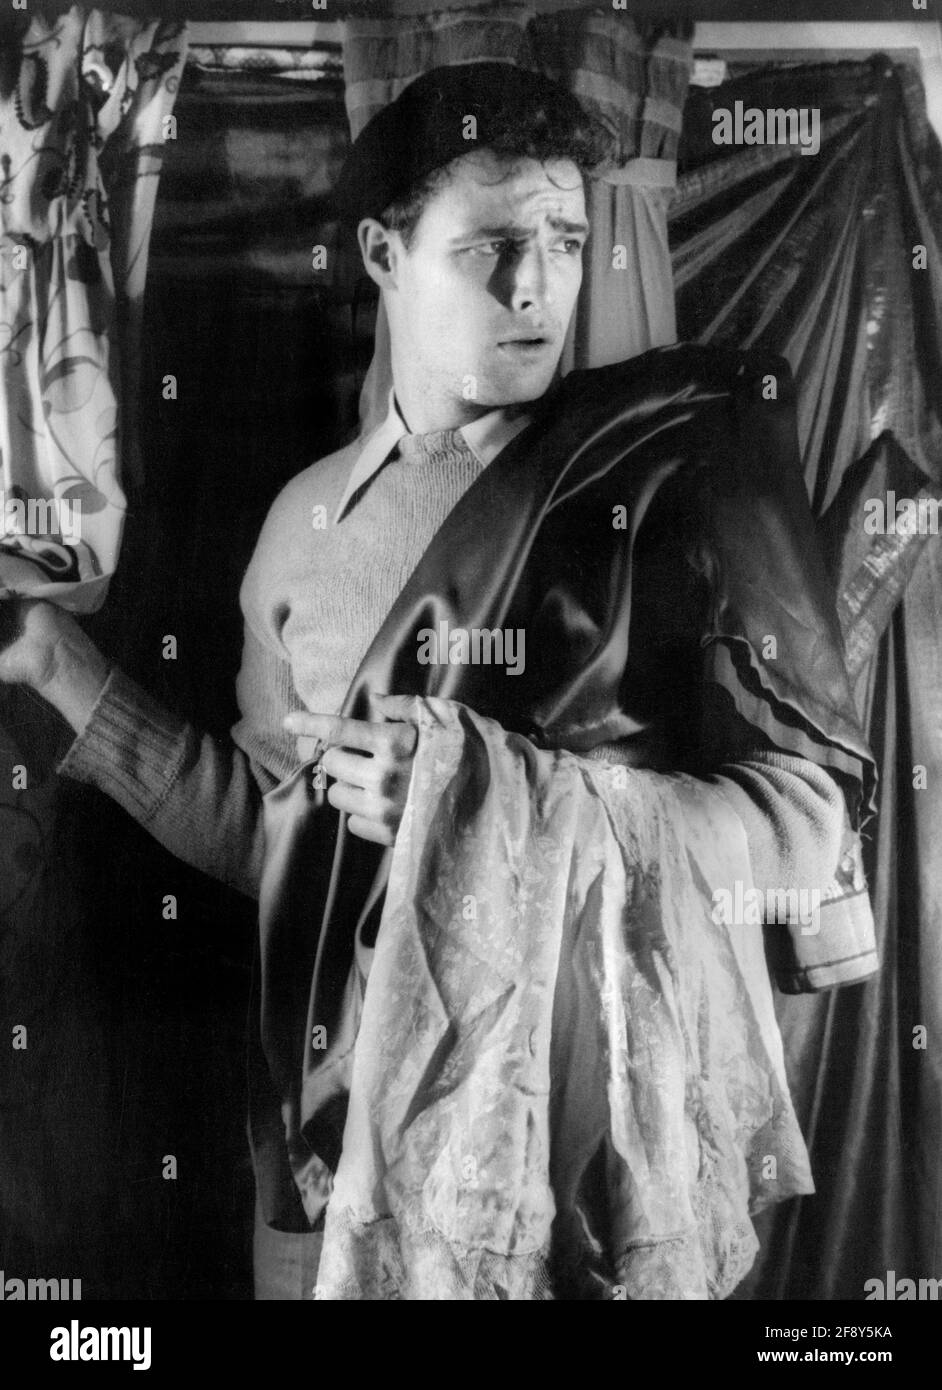 Marlon Brando. Ritratto dell'attore e regista americano Marlon Brando Jr. (1924-2004) nella produzione di Broadway di 'A Streetcar named Desire'. Foto di Carl van Vechten, 1948 Foto Stock